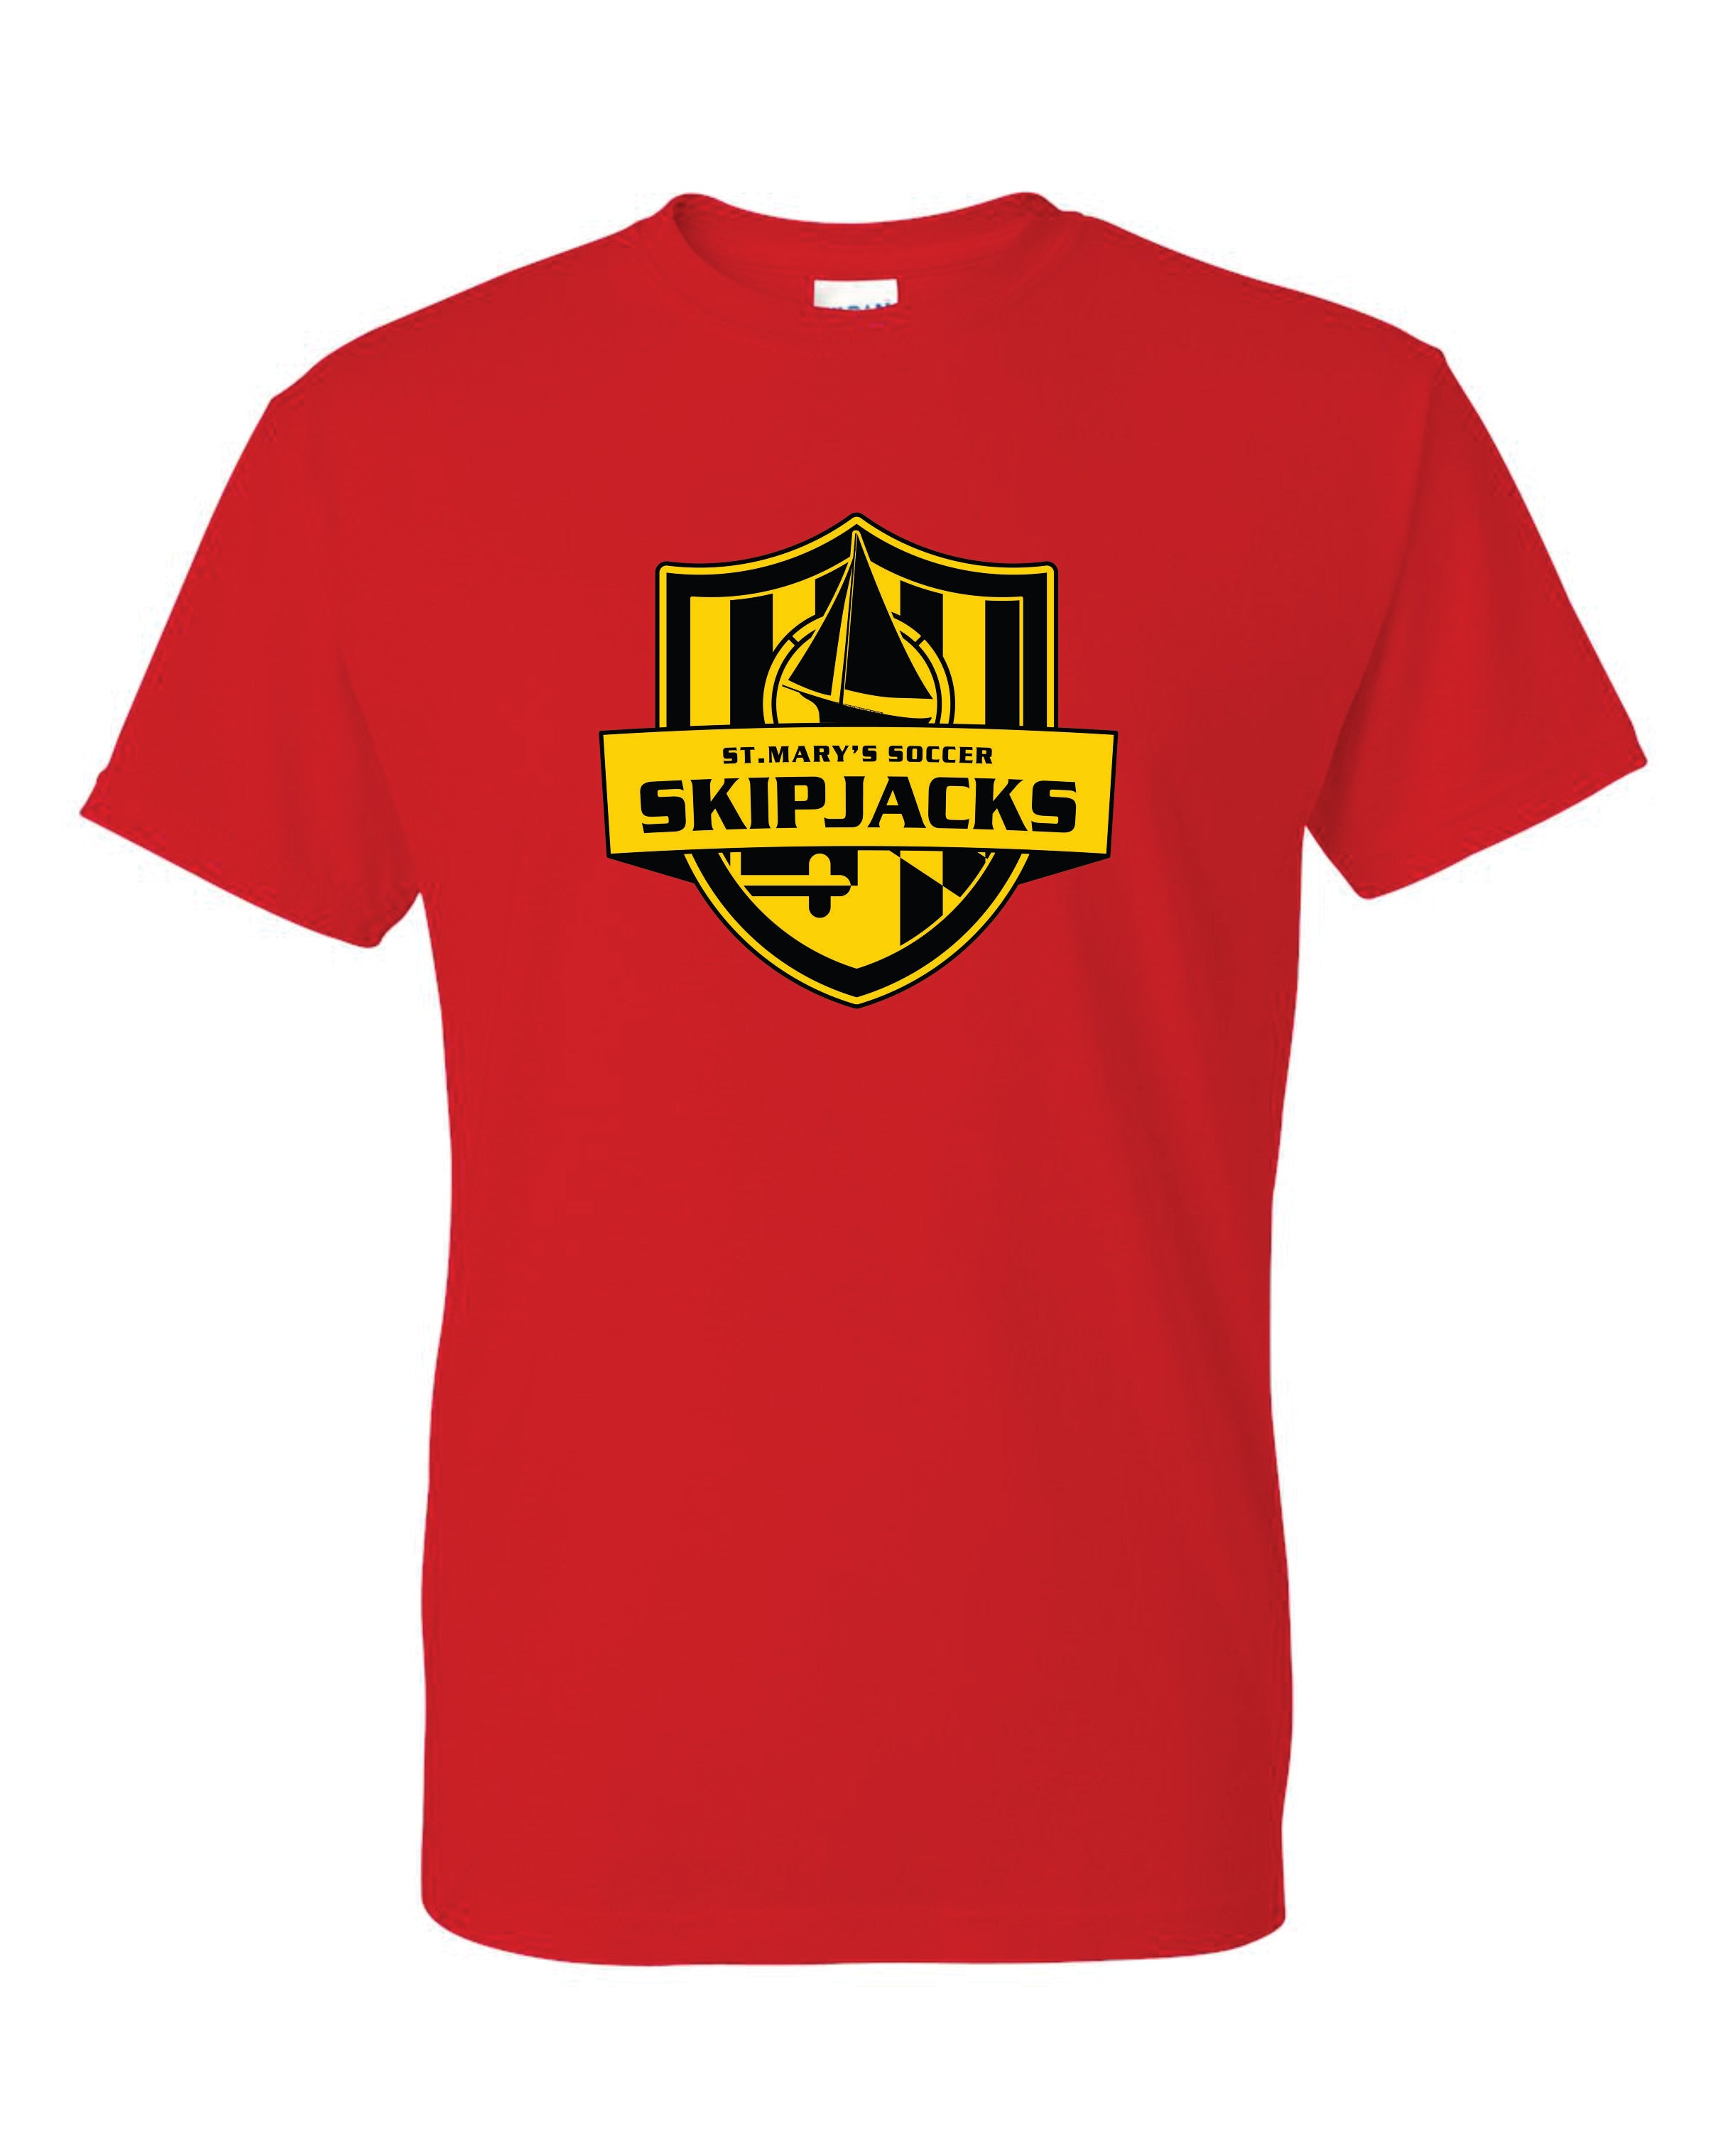 Skipjacks Short Sleeve T-Shirt 50/50 Blend